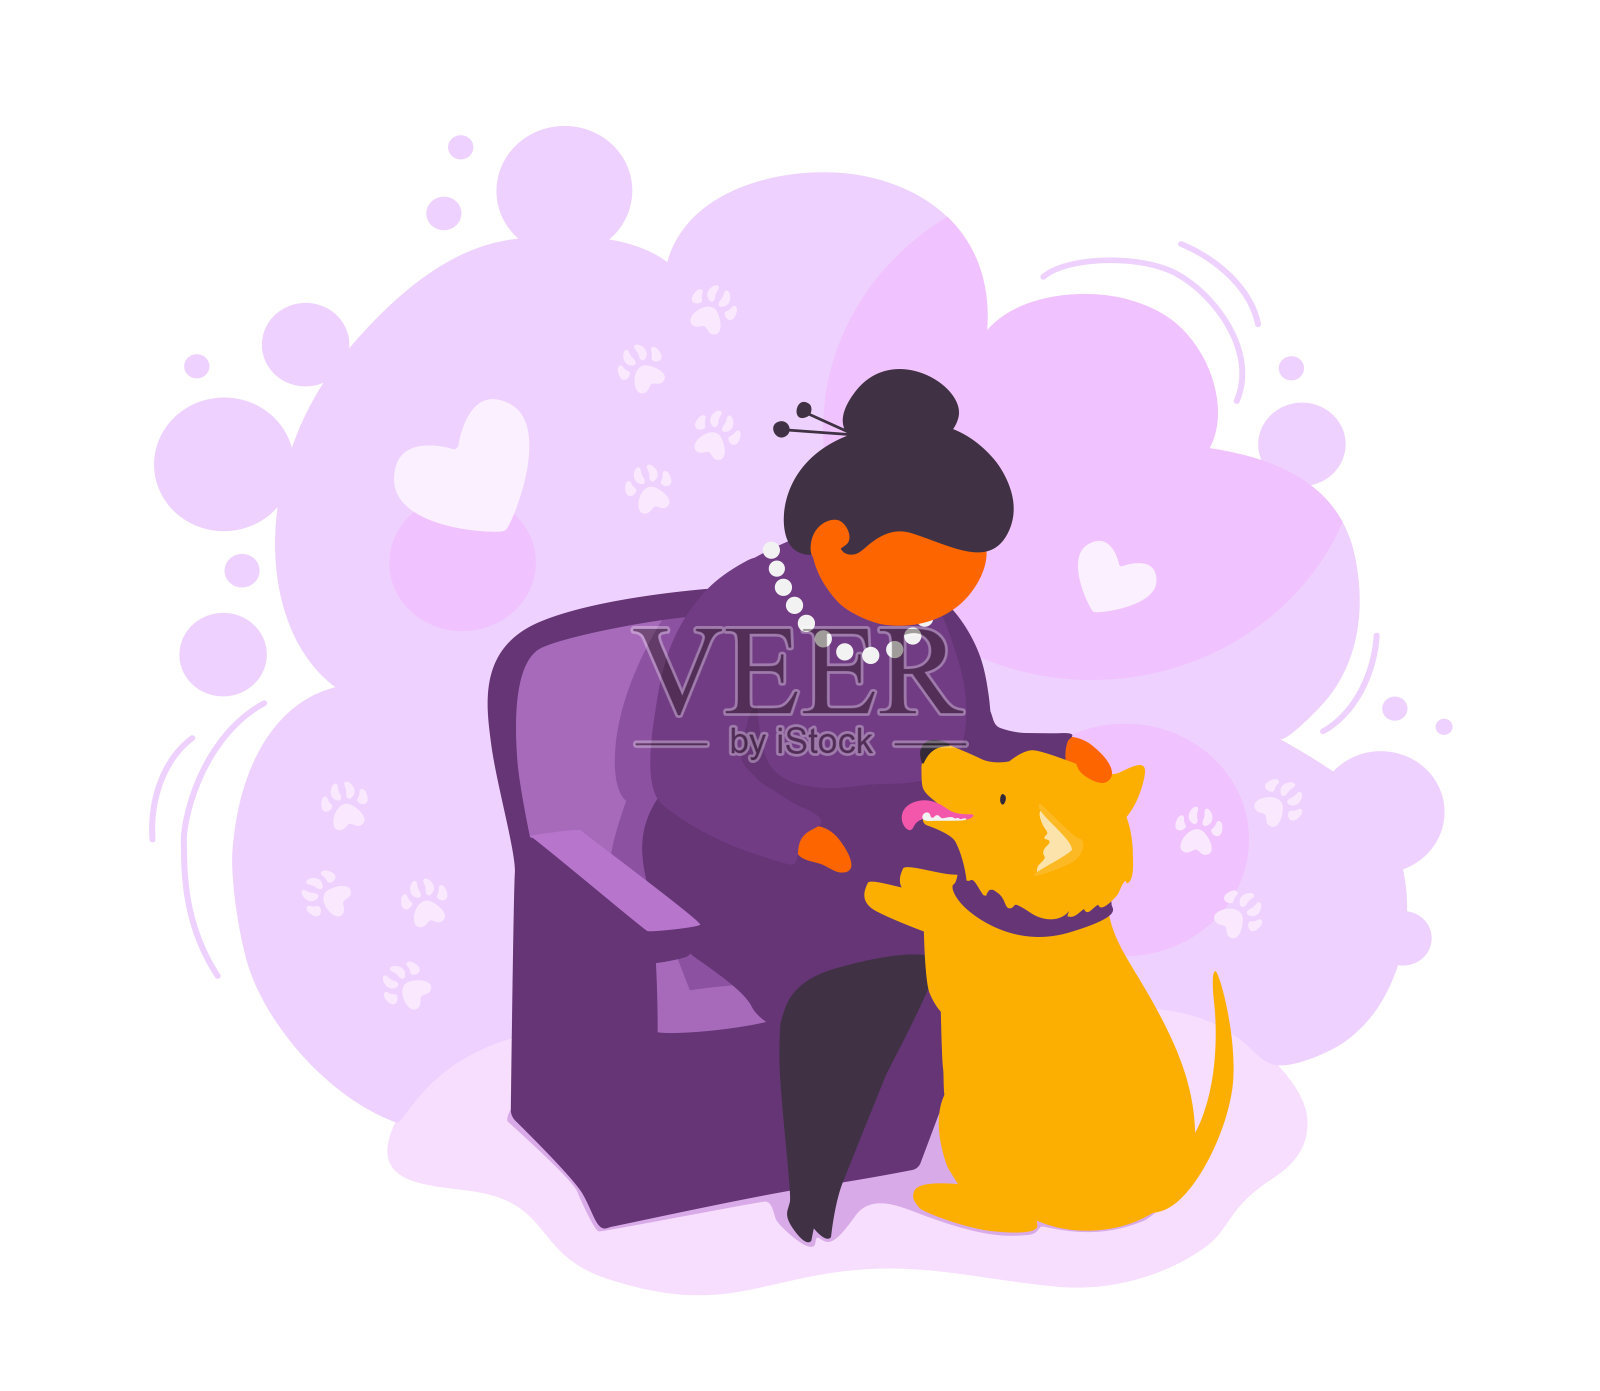 一位年长的成年妇女抚摸着她的狗。优雅的退休女士喜欢她的宠物。一位上了年纪的小狗主人坐在扶手椅上。插画图片素材